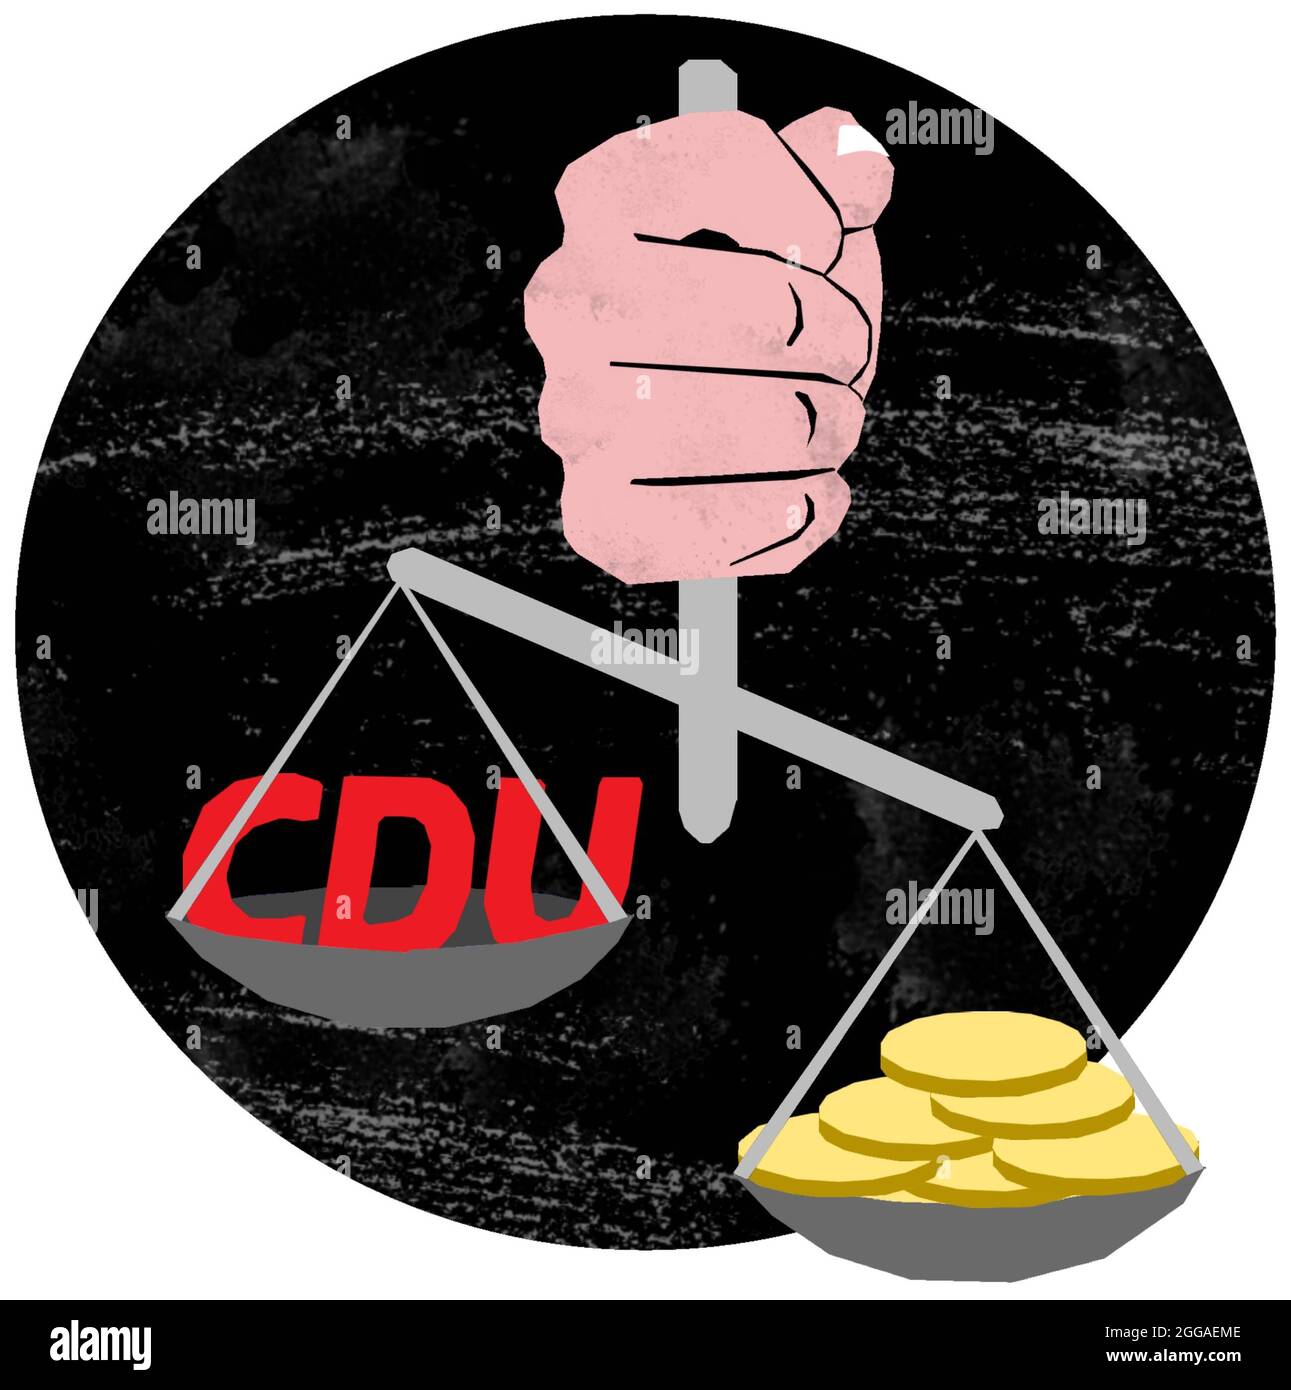 Corrupción en los miembros políticos del partido CDU, dinero sobre valores, codicia sobre moralidad, buyability, egoísmo Foto de stock